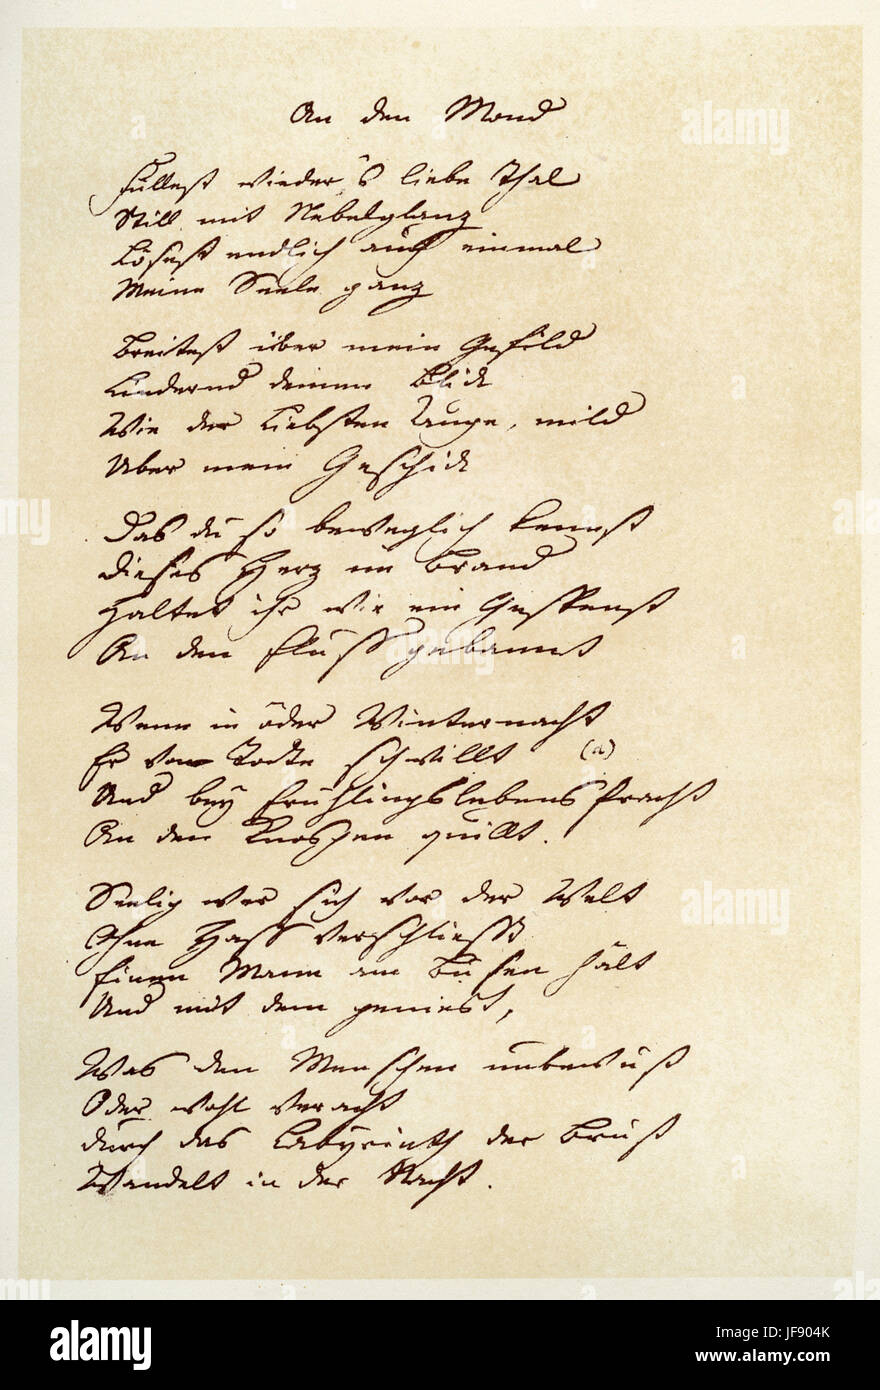 An den Mond, poem by Johann Wolfgang von Goethe written for Charlotte von Stein, handwritten manuscript Stock Photo